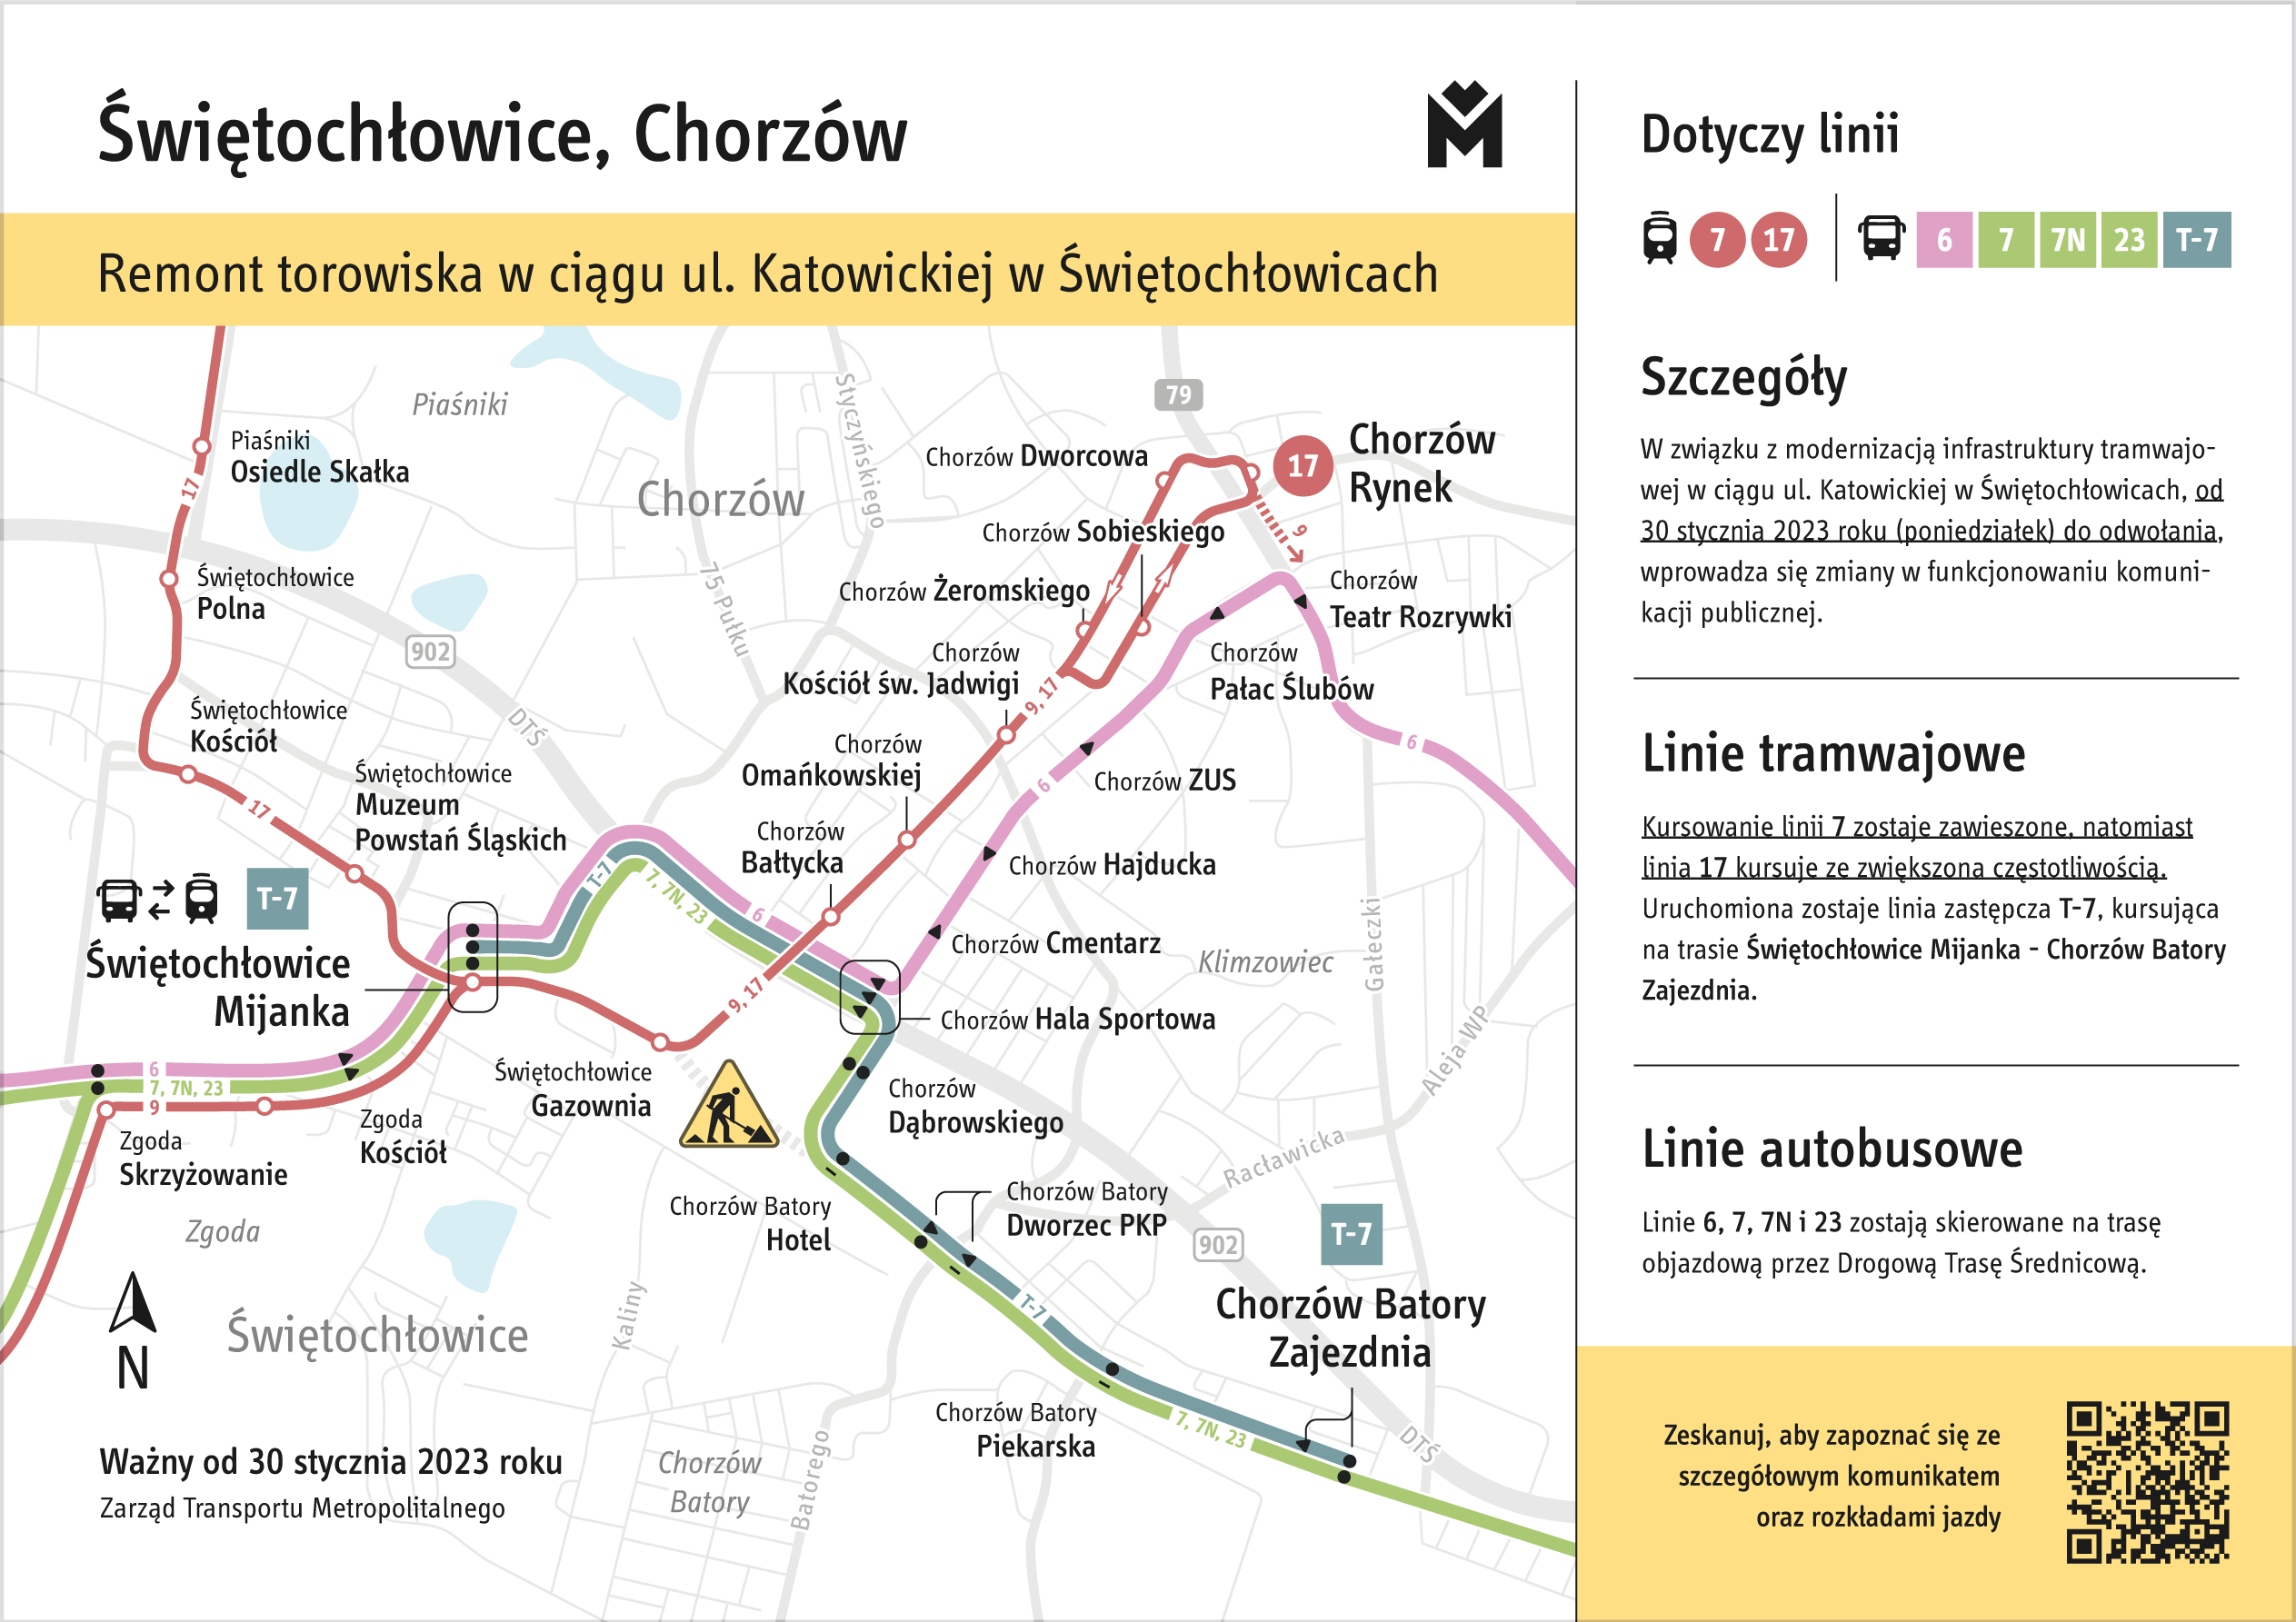 Świętochłowice, Chorzów - Remont torowiska tramwajowego w ciagu ul. Katowickiej w Świętochłowicach